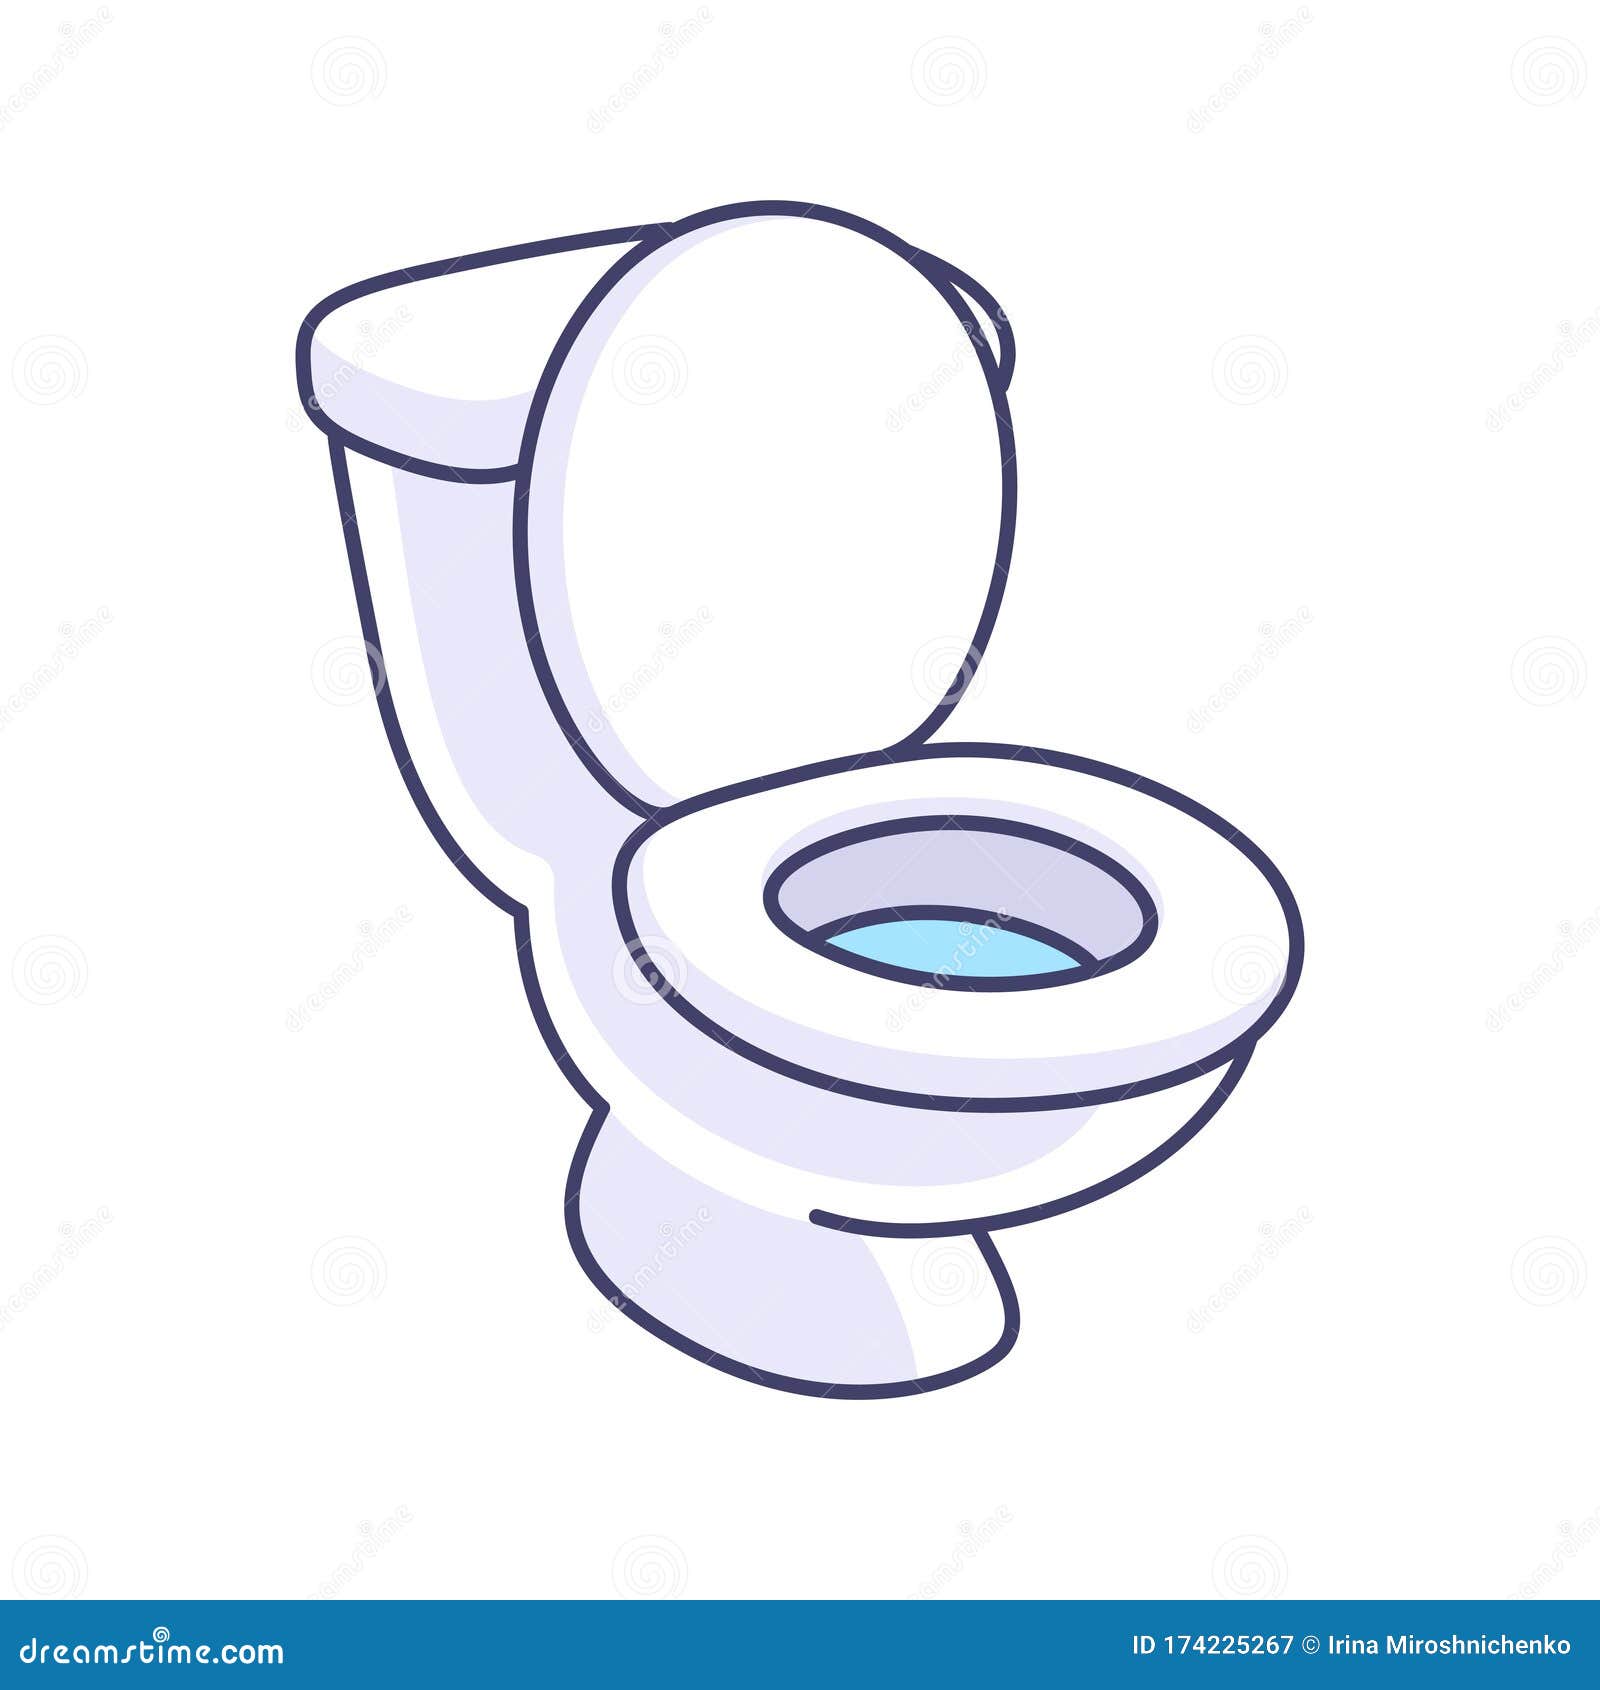 Cartoon Clip Art Toilet Bowl Stock Illustrations – 140 Cartoon Clip Art  Toilet Bowl Stock Illustrations, Vectors & Clipart - Dreamstime